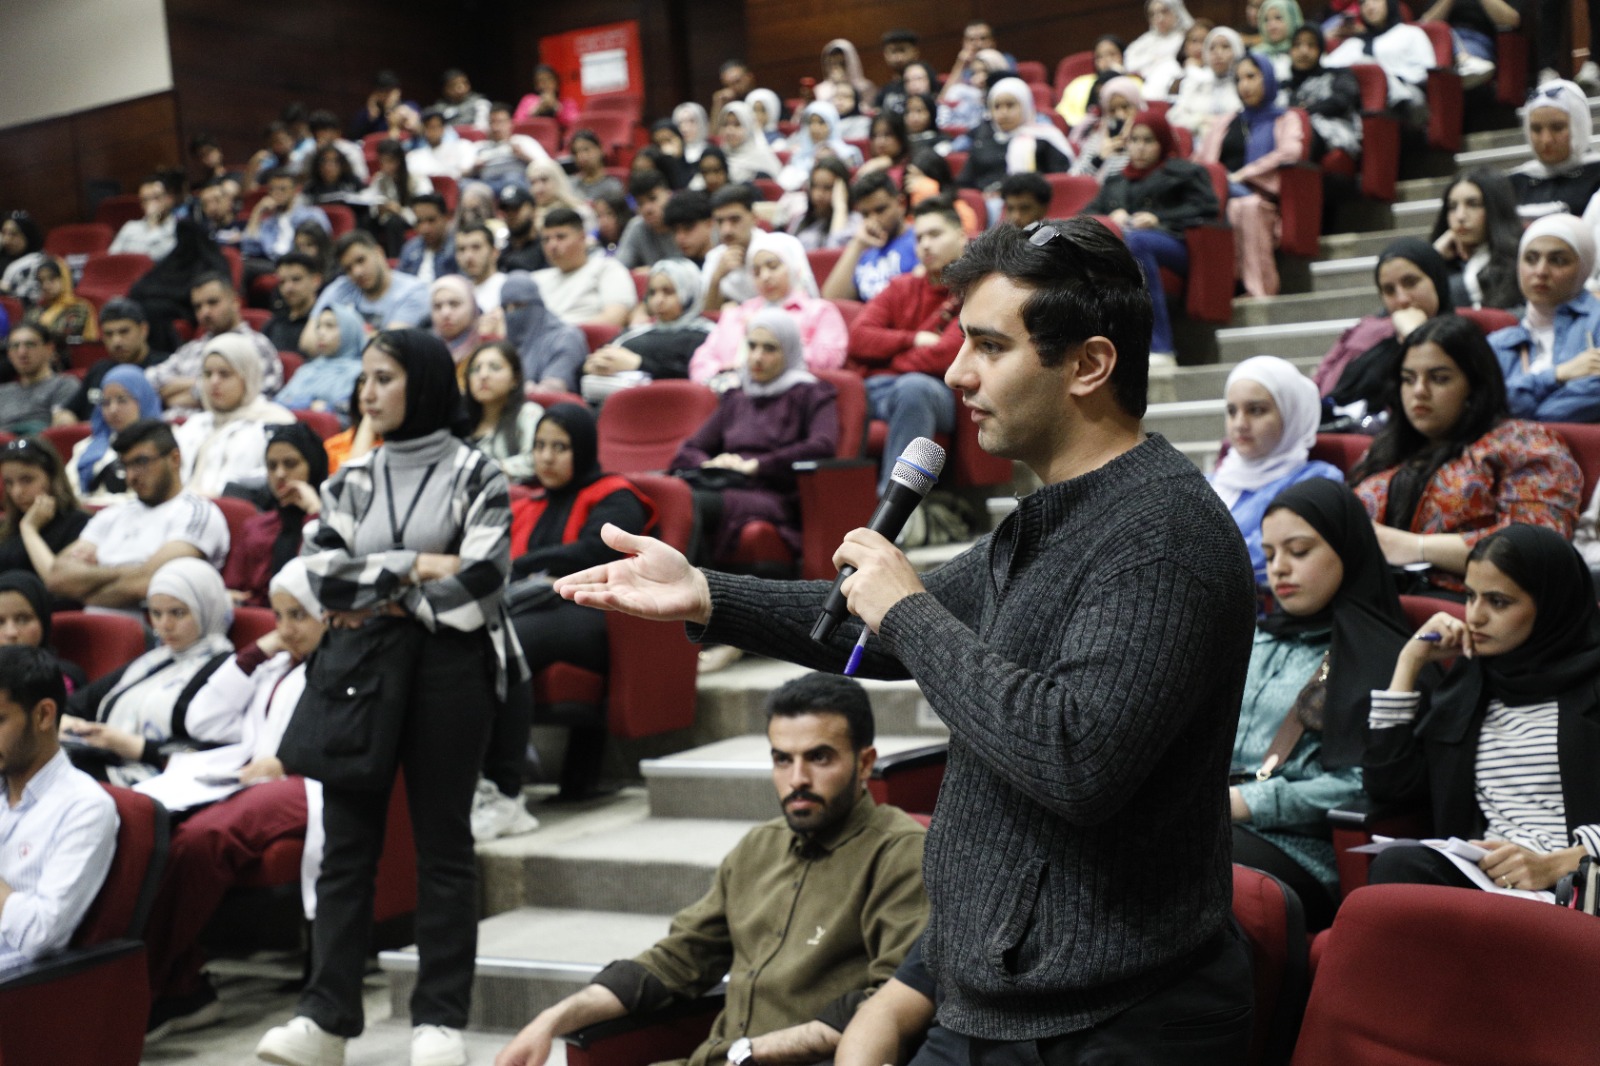 حوارية حزبية تزود طلبة الشرق الأوسطبأسس الديمقراطية النشطة